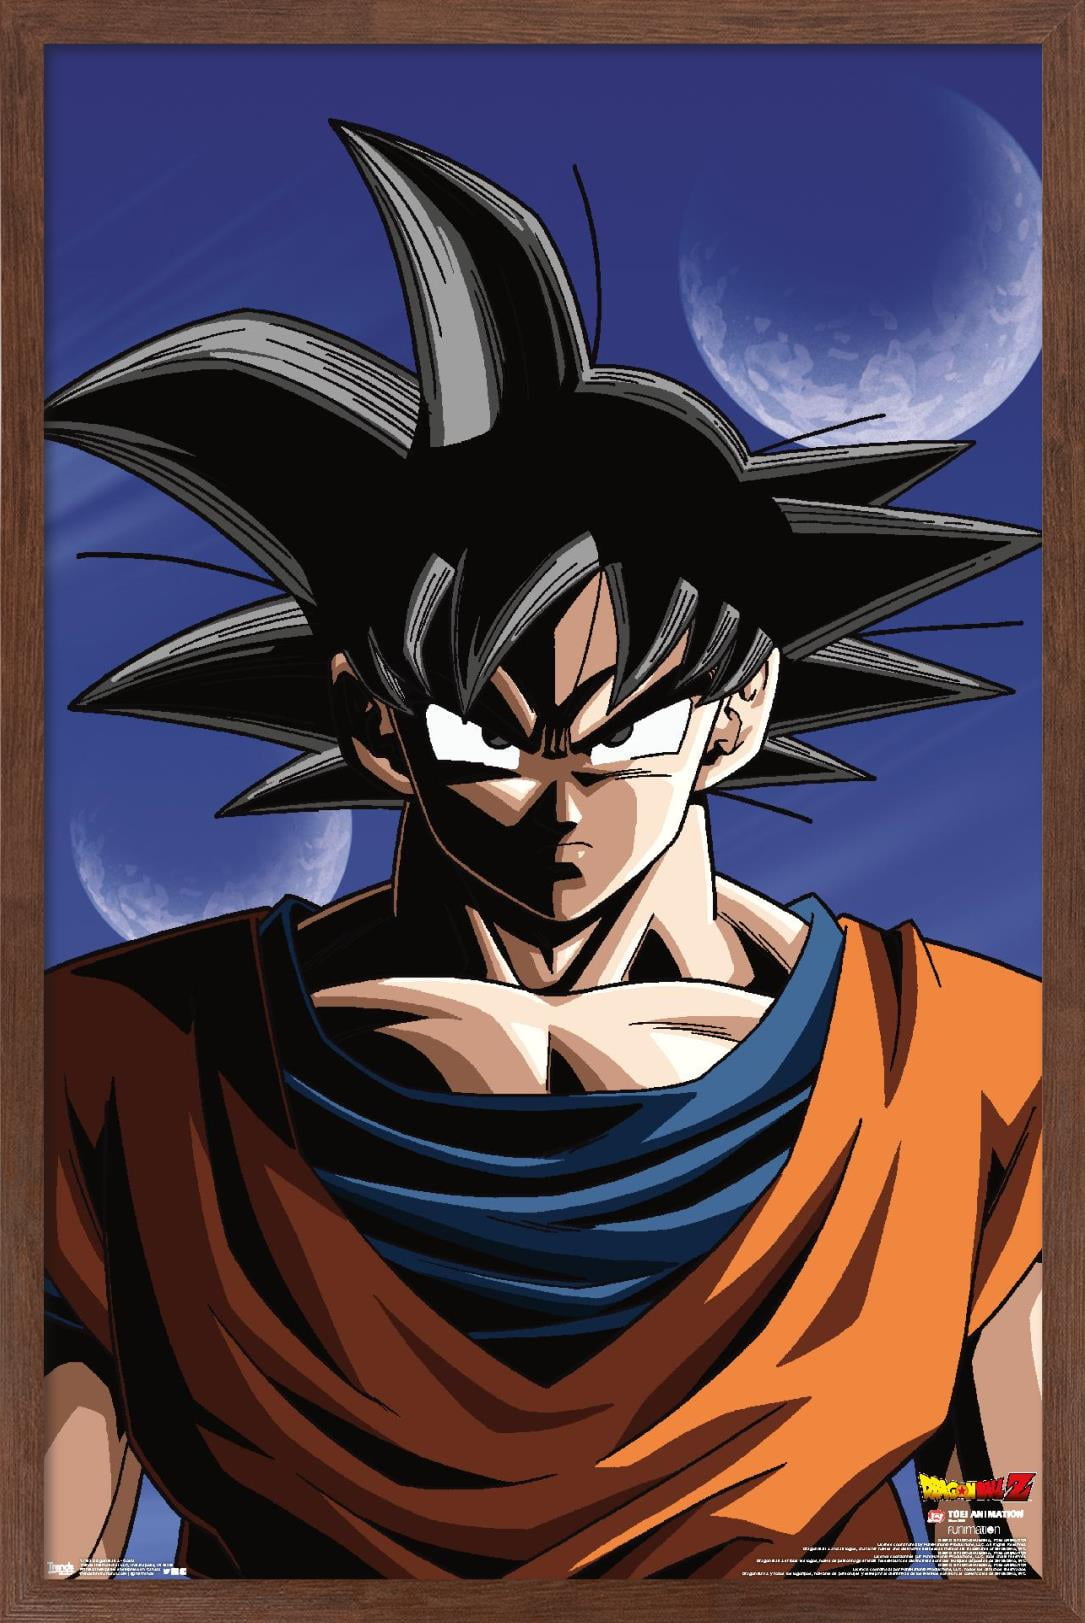 Dragon Ball Z - Goku Wall Poster, 